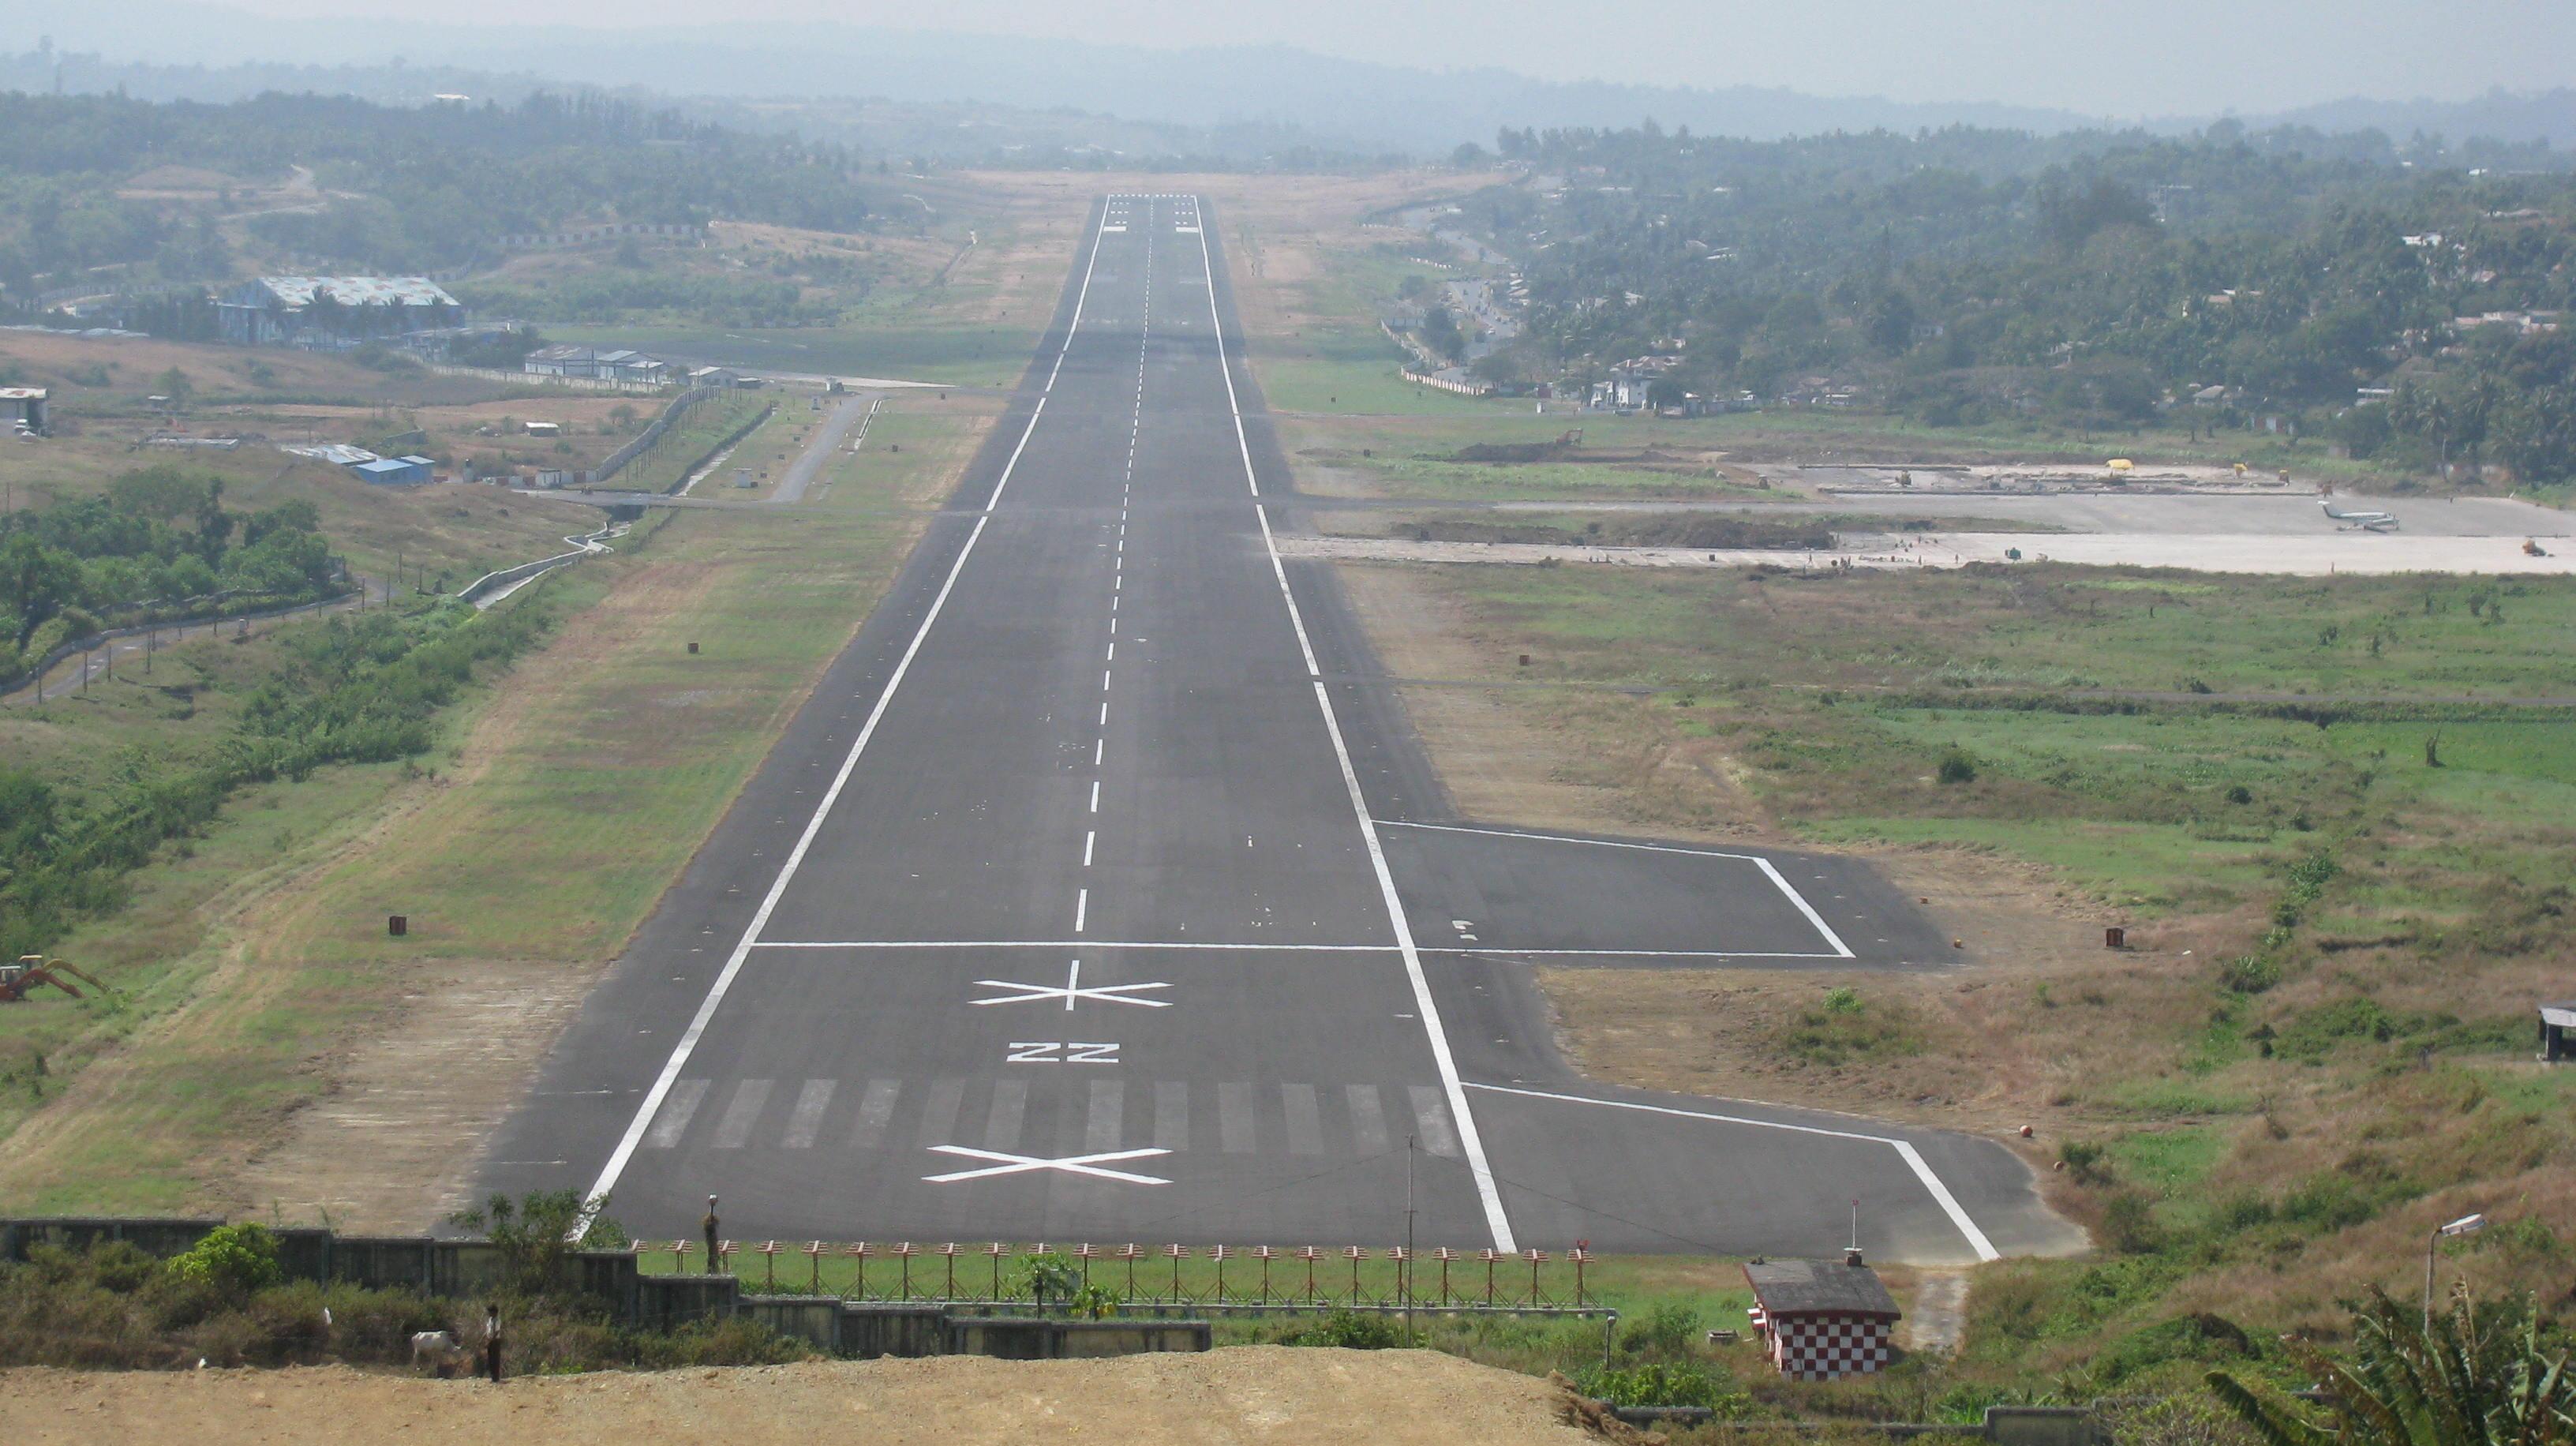 File:Vir Sarvarkar Airport View.jpg - Wikimedia Commons